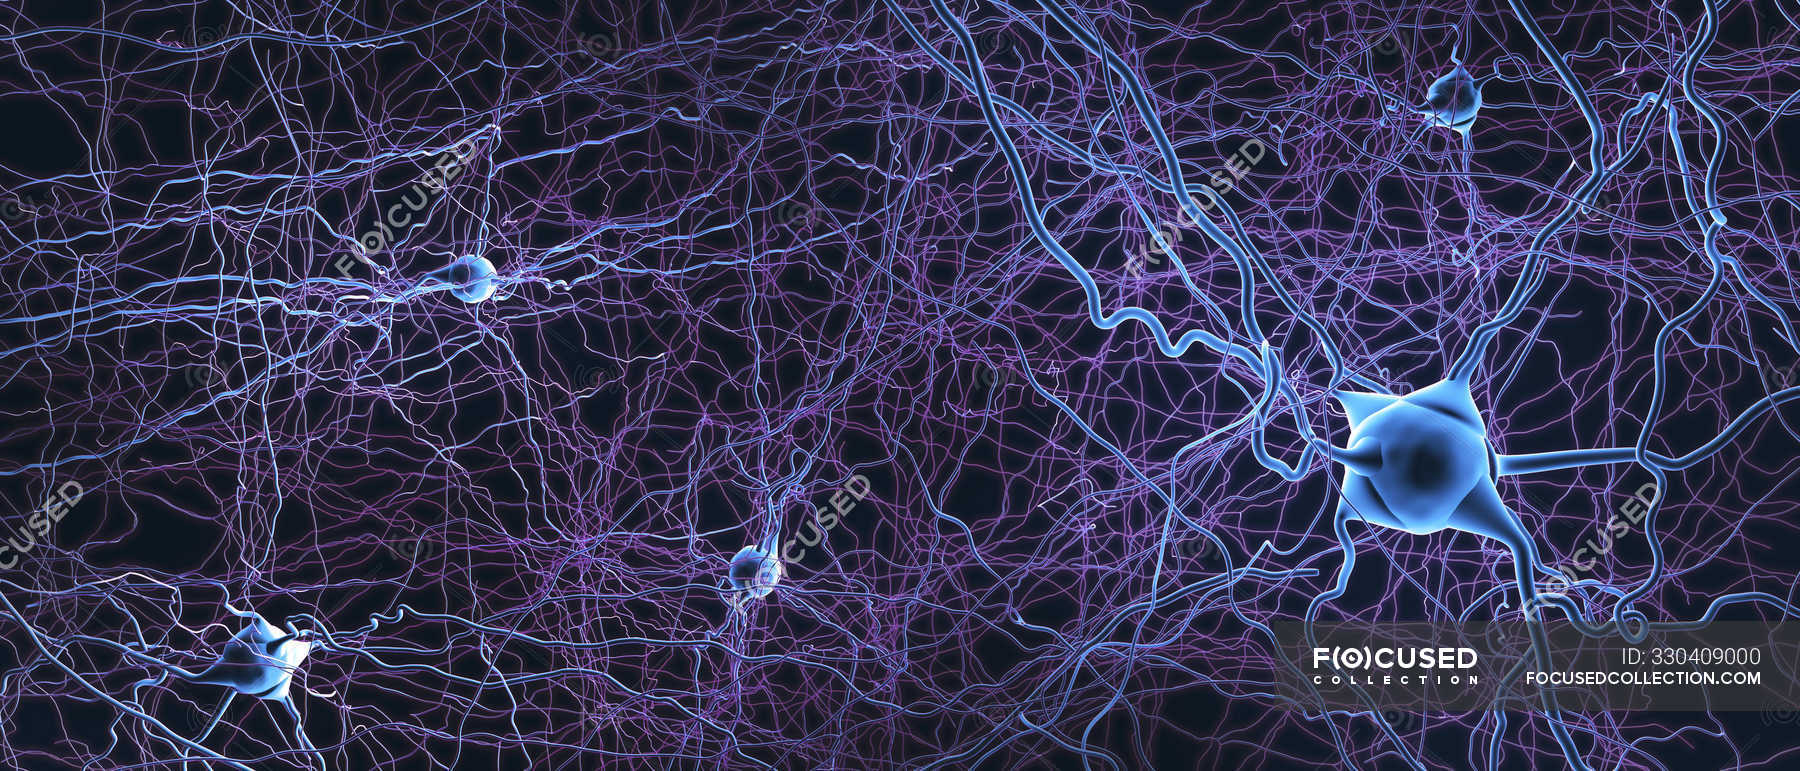 Скорость нейронов в мозге. Нейроны фон Экономо. Нейроны мозга. Нейронная сеть мозга. Нейронные клетки мозга.